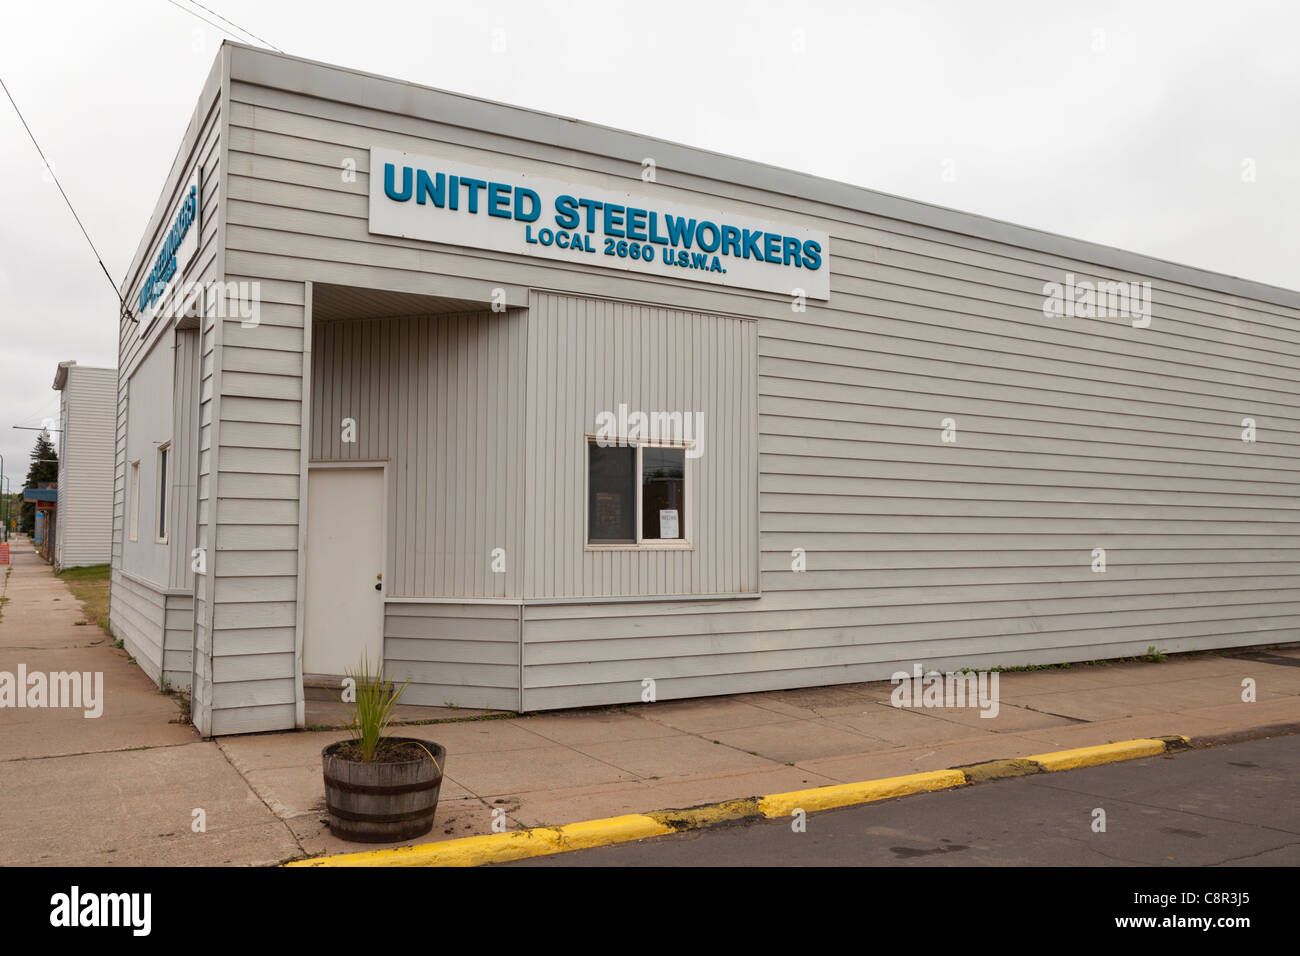 United Steelworkers union hall, Keewatin Minnesota. Stock Photo